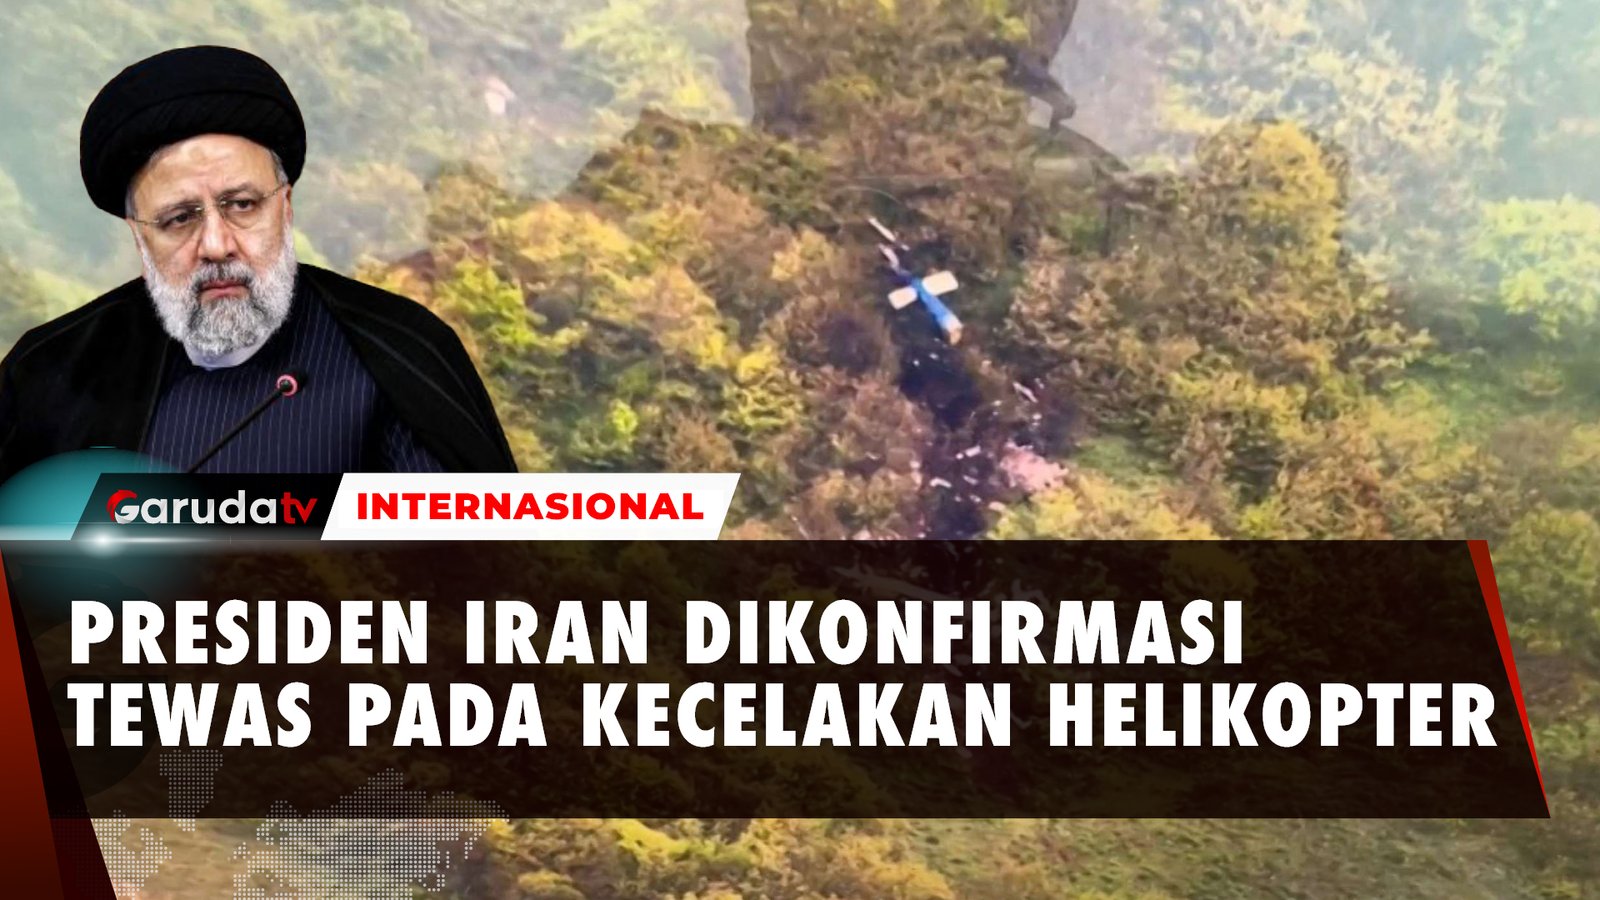 Presiden Iran Ebrahim Raisi Dikonfirmasi Tewas dalam Kecelakaan Helikopter